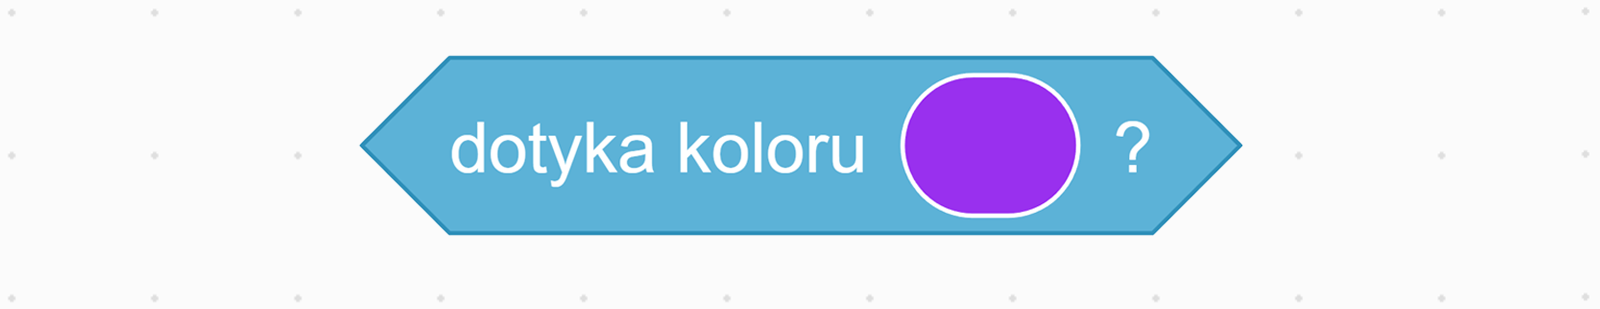 Zrzut ekranu bloku "dotyka koloru?" z wybranym kolorem fioletowym. 